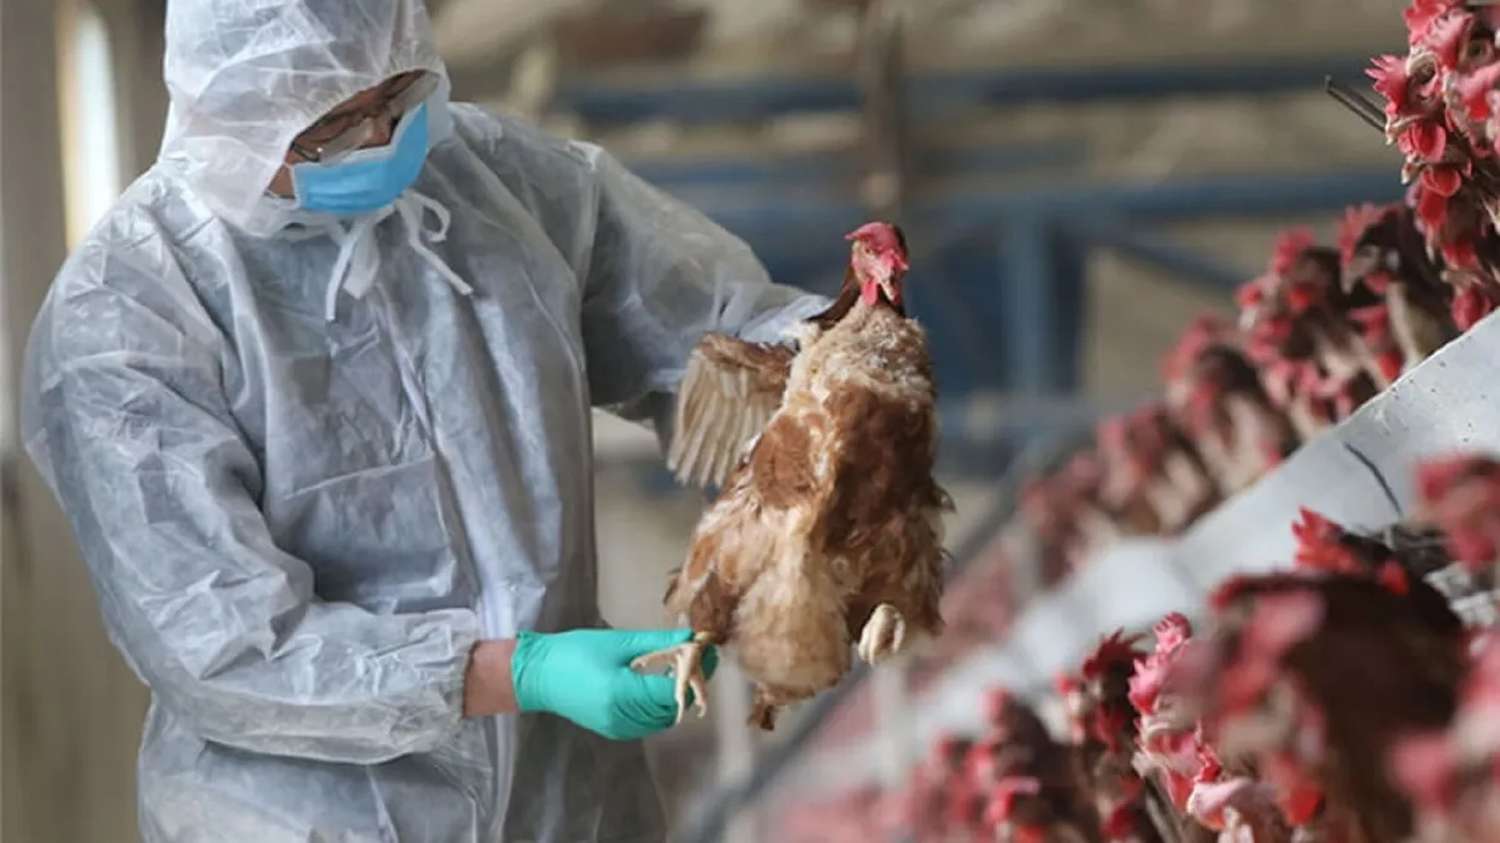 Las granjas ubicadas en el área circundante al foco de influenza aviar continúan produciendo bajo protocolo